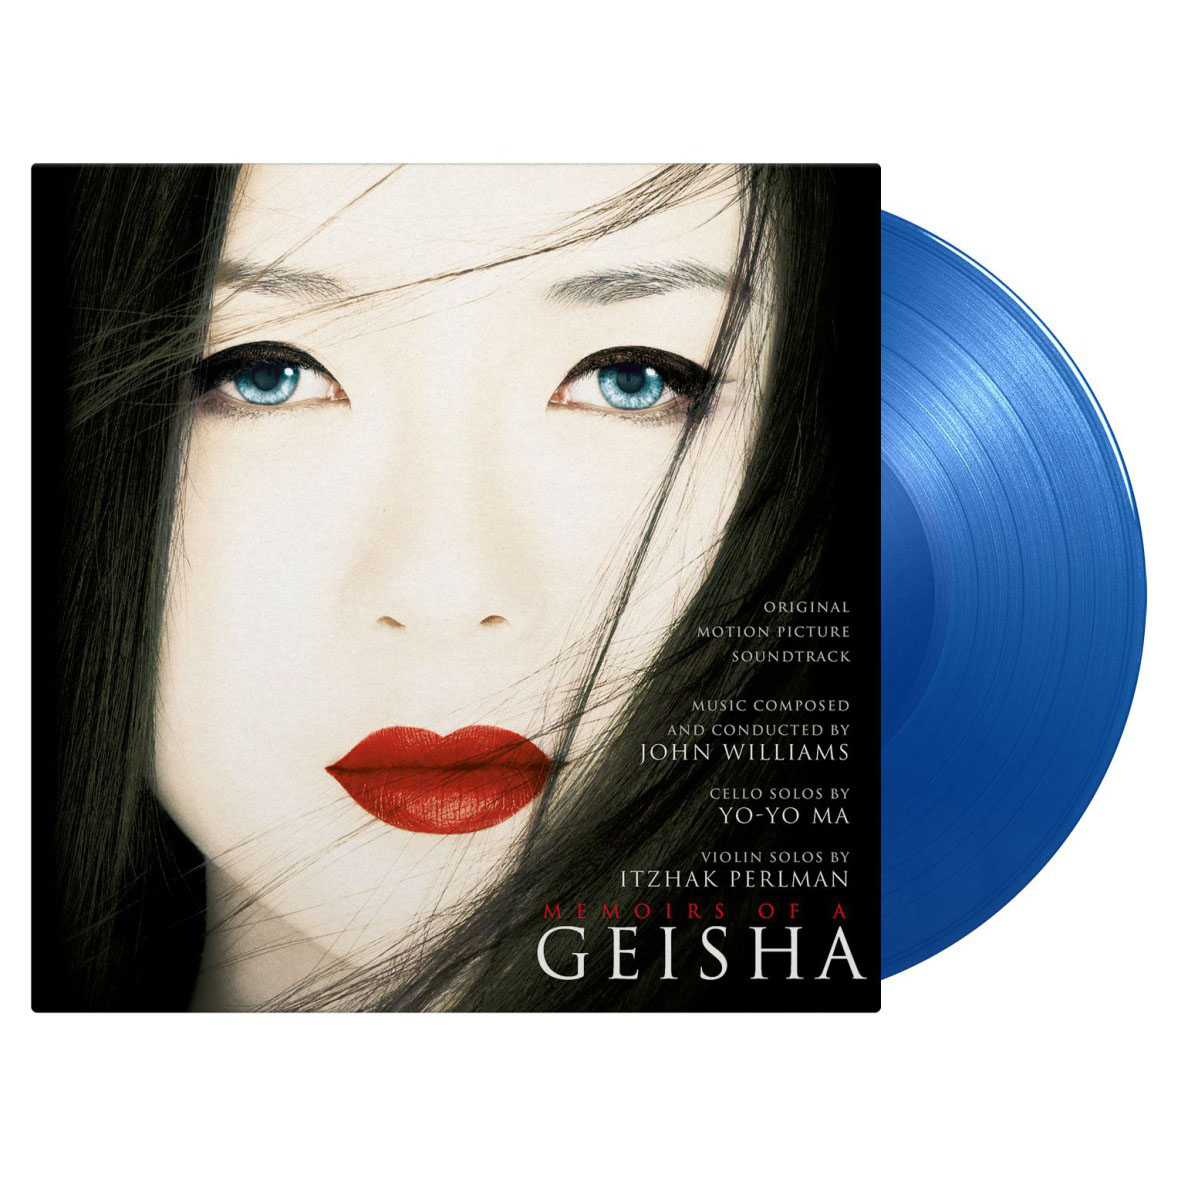 예약판매[PRE-ORDER] 게이샤의 추억 영화음악 (Memoirs Of A Geisha OST by John Williams 존 윌리엄스) [투명 블루 컬러 2LP]